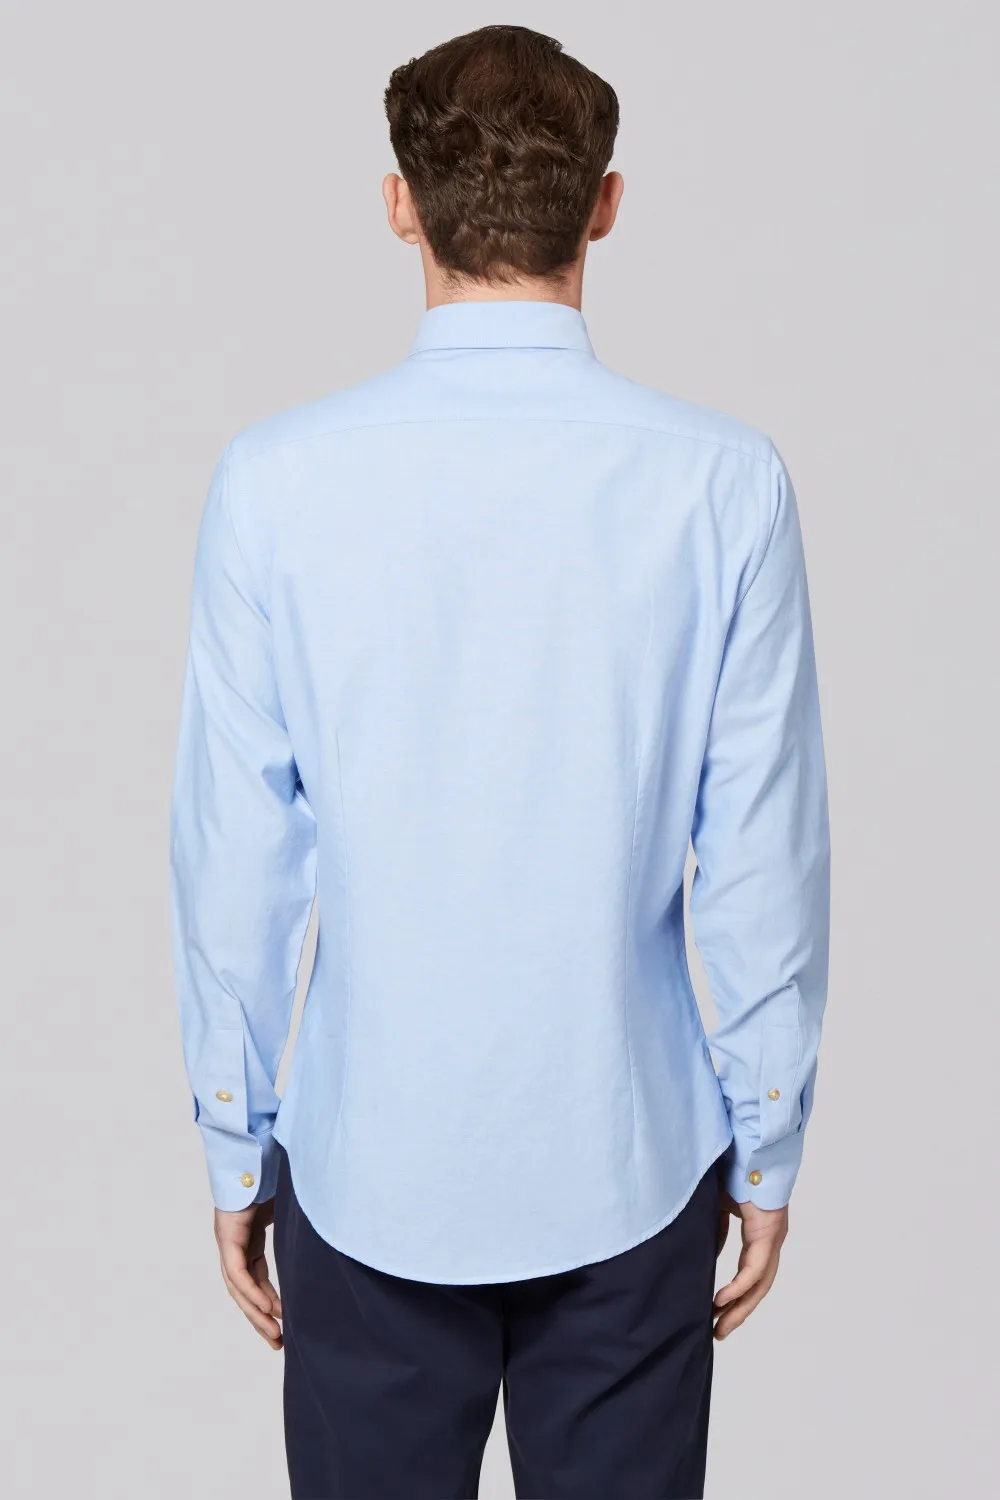 Новое поступление 100% хлопок синий Оксфорд кнопку воротник и манжеты кнопку рубашка на заказ для мужчин